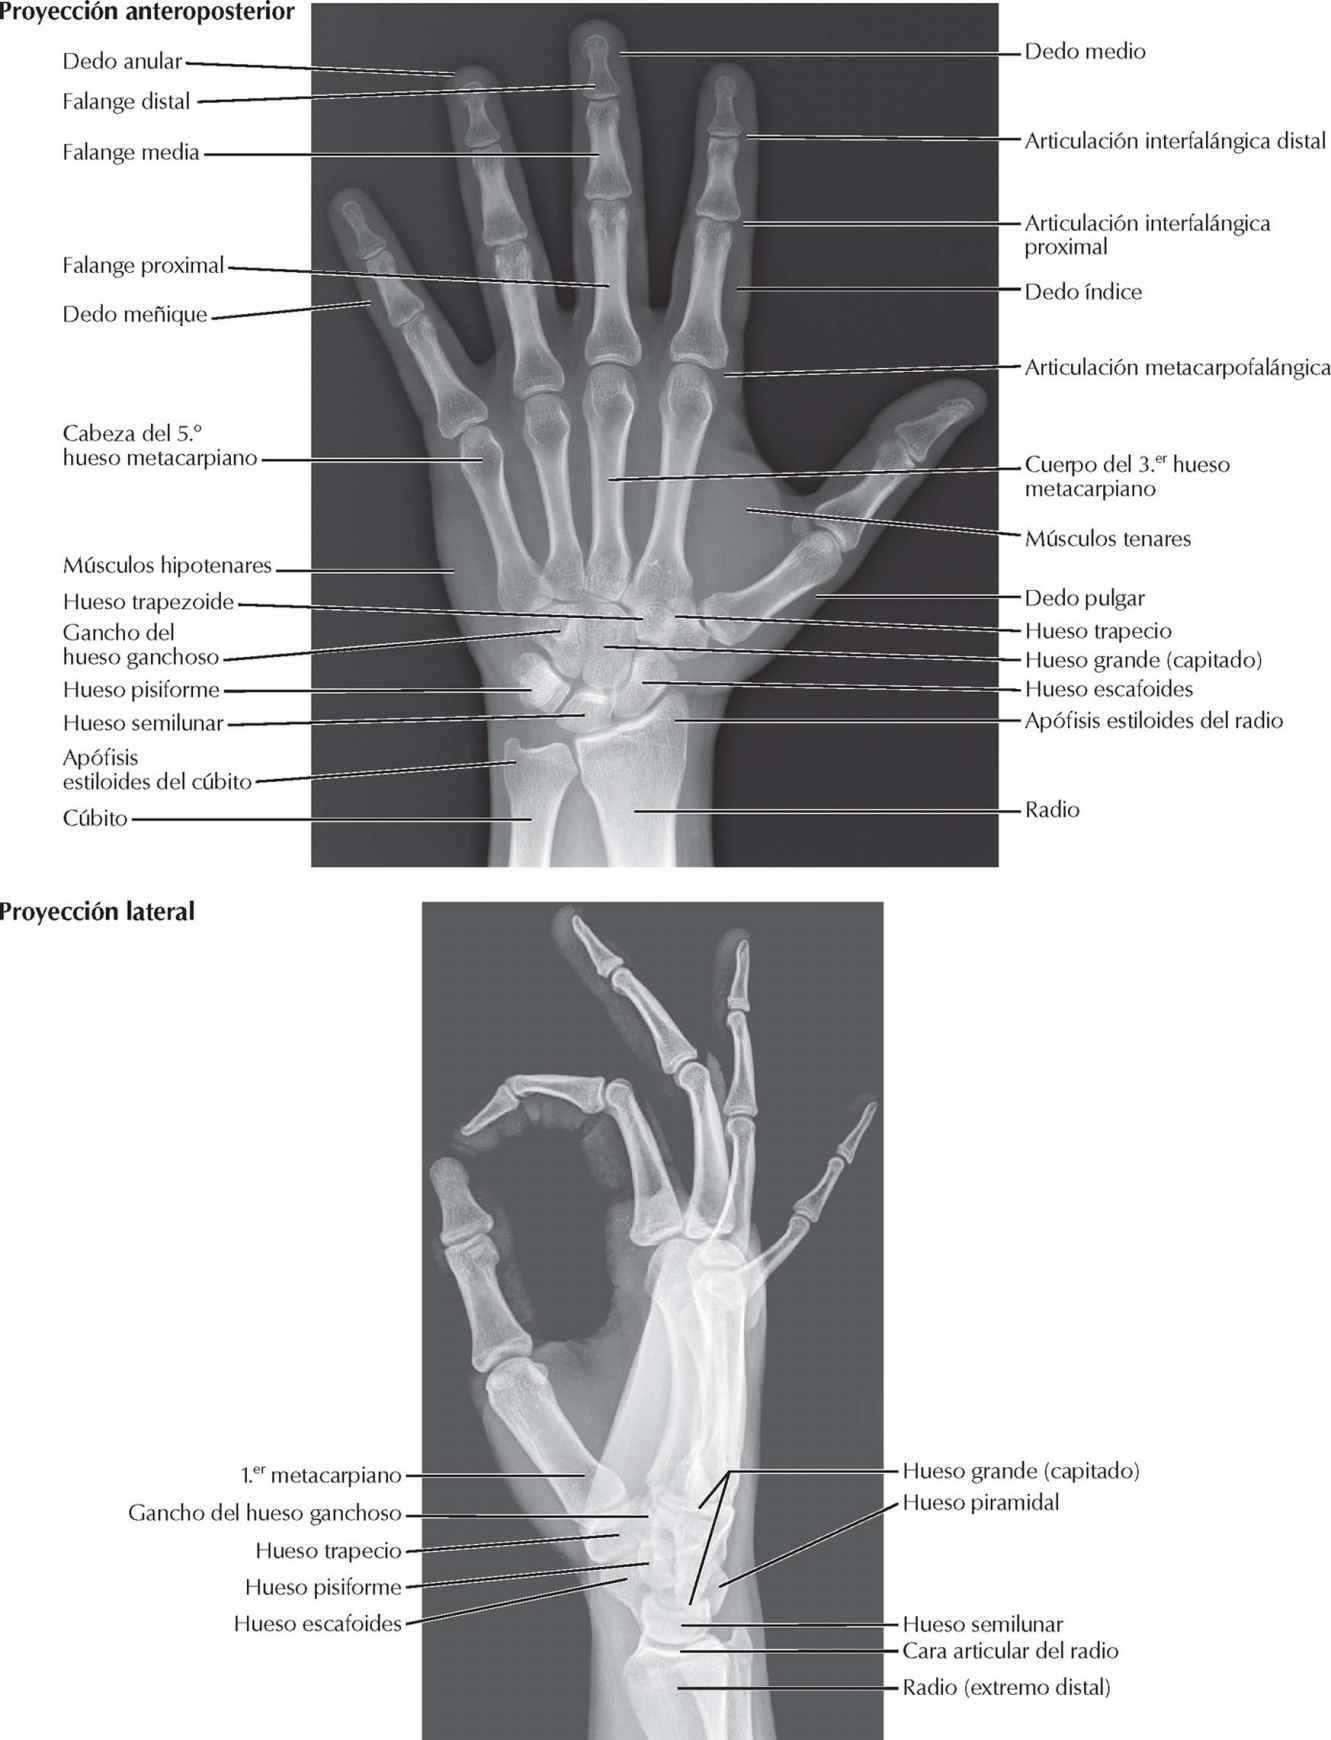 Carpo y mano: radiografías